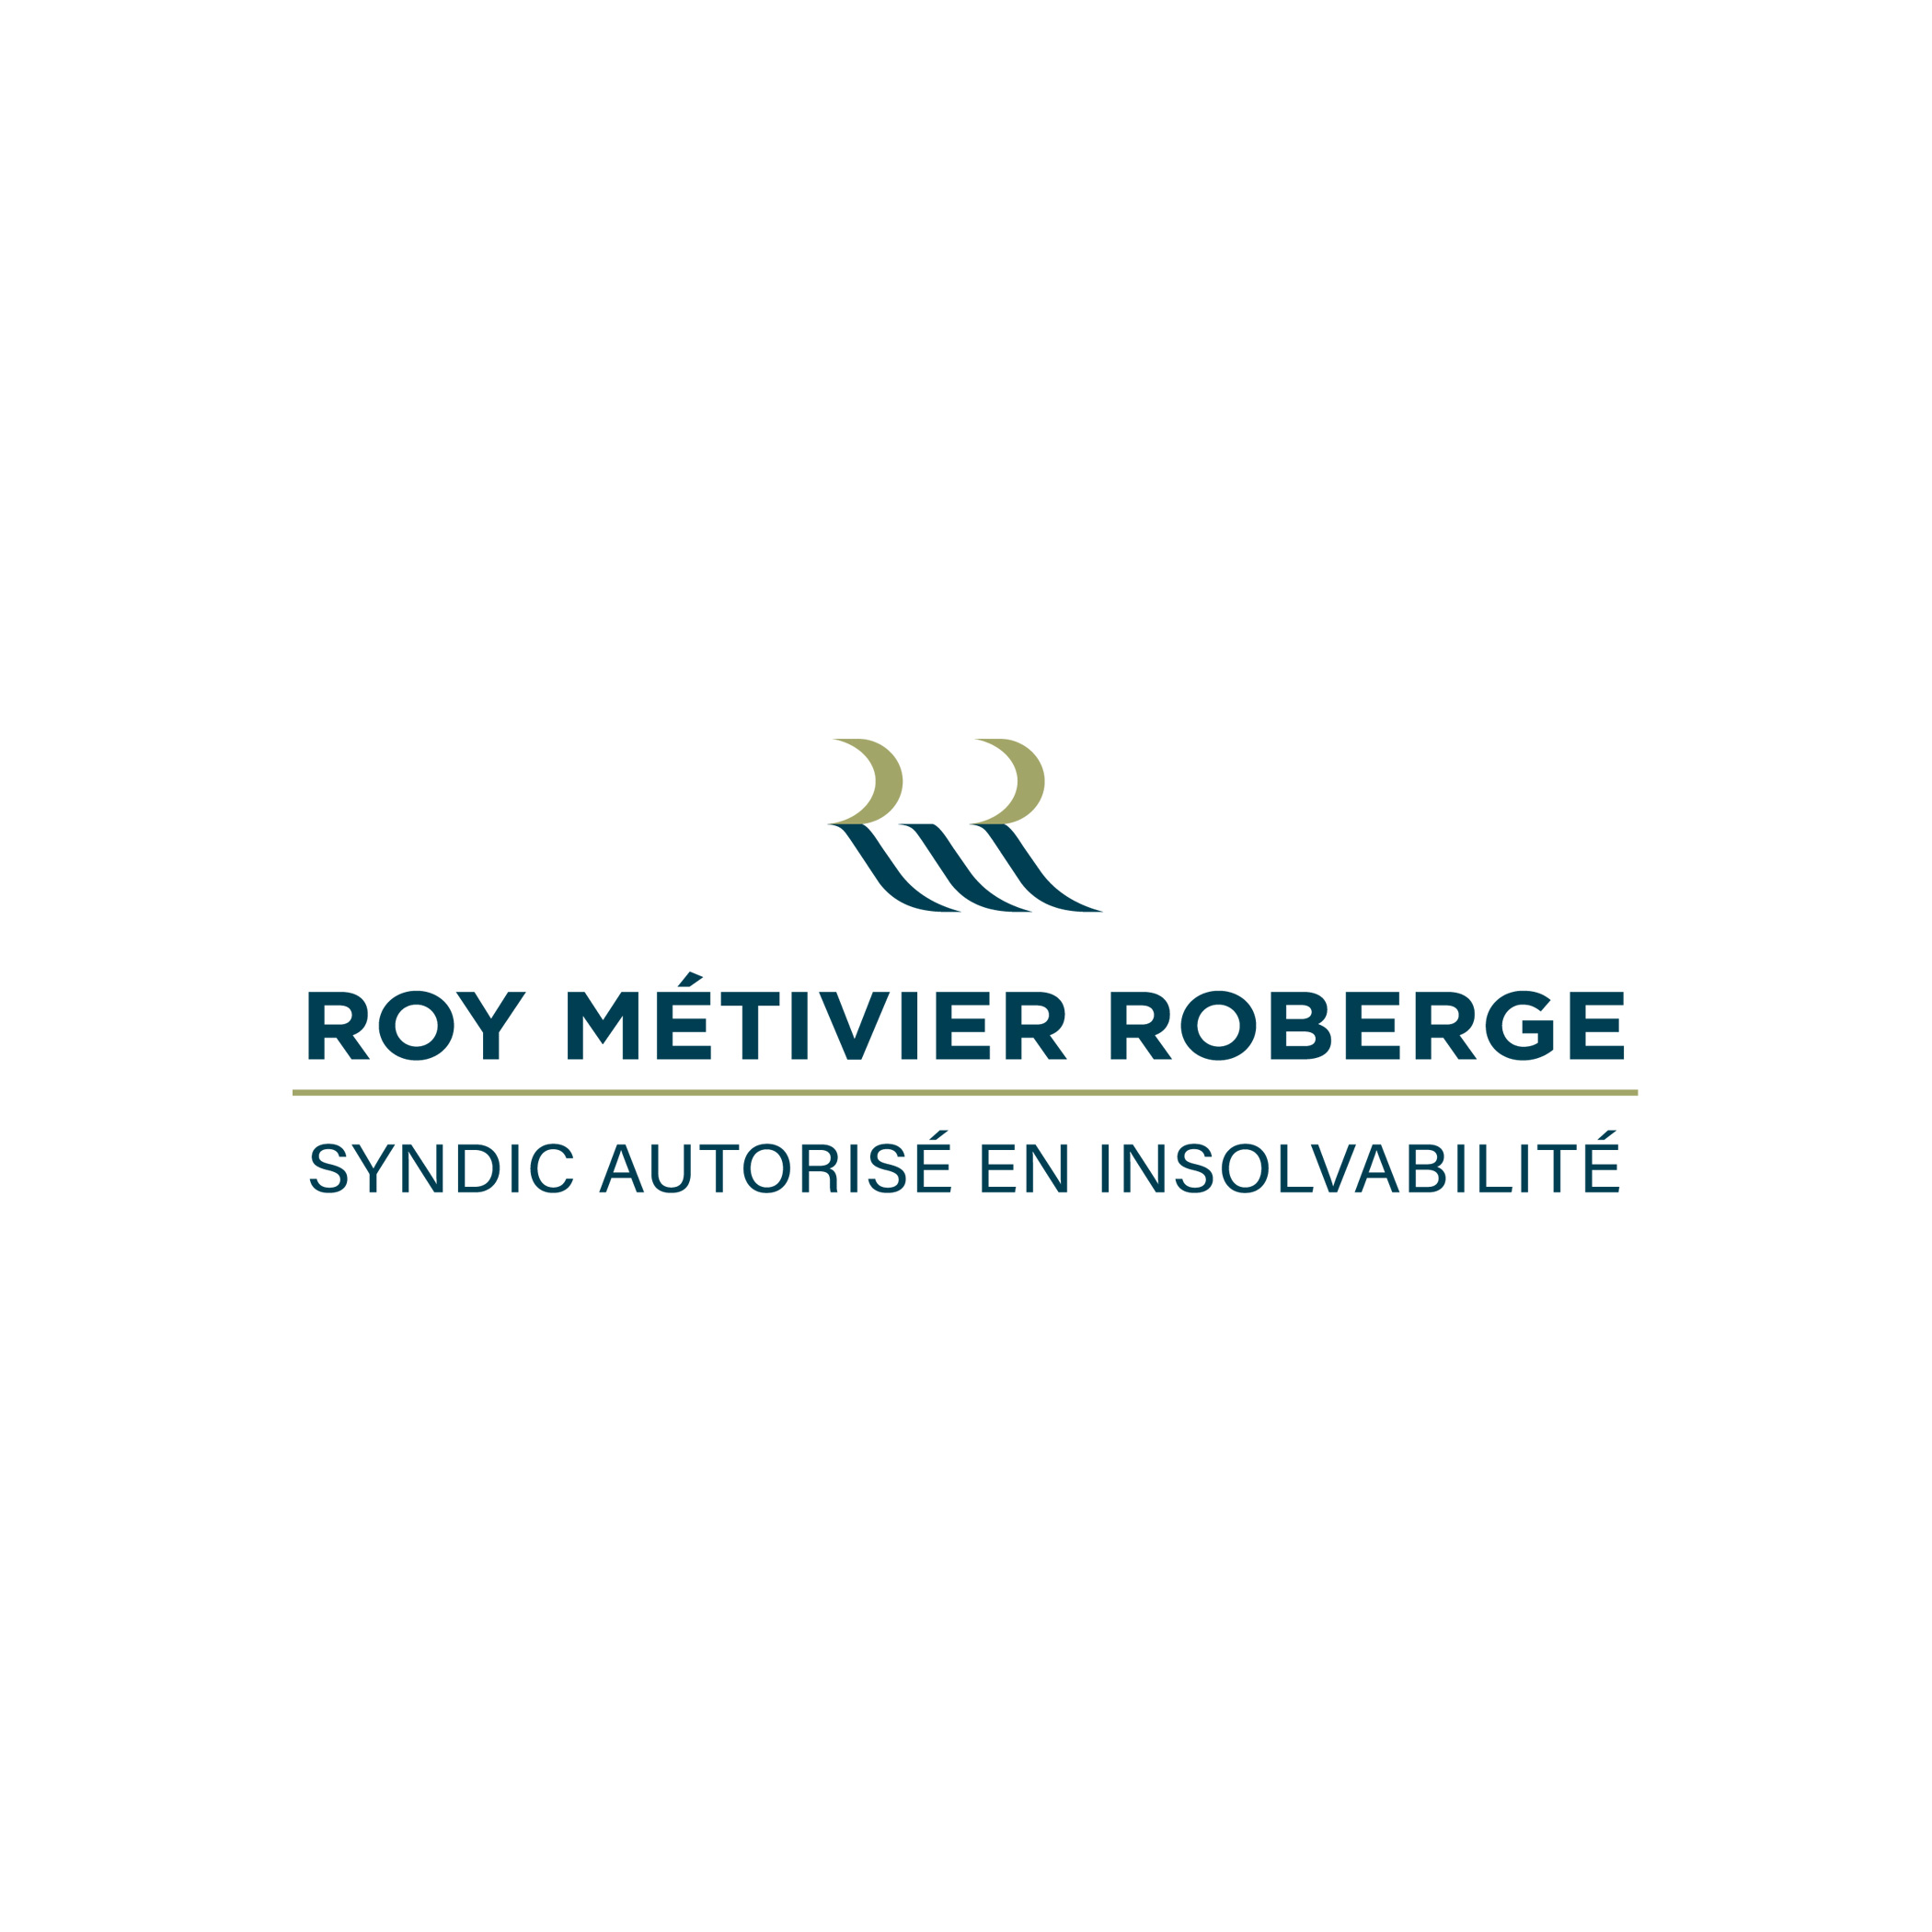 Roy Métivier Roberge - Syndic de faillite Trois-Rivières - SAI